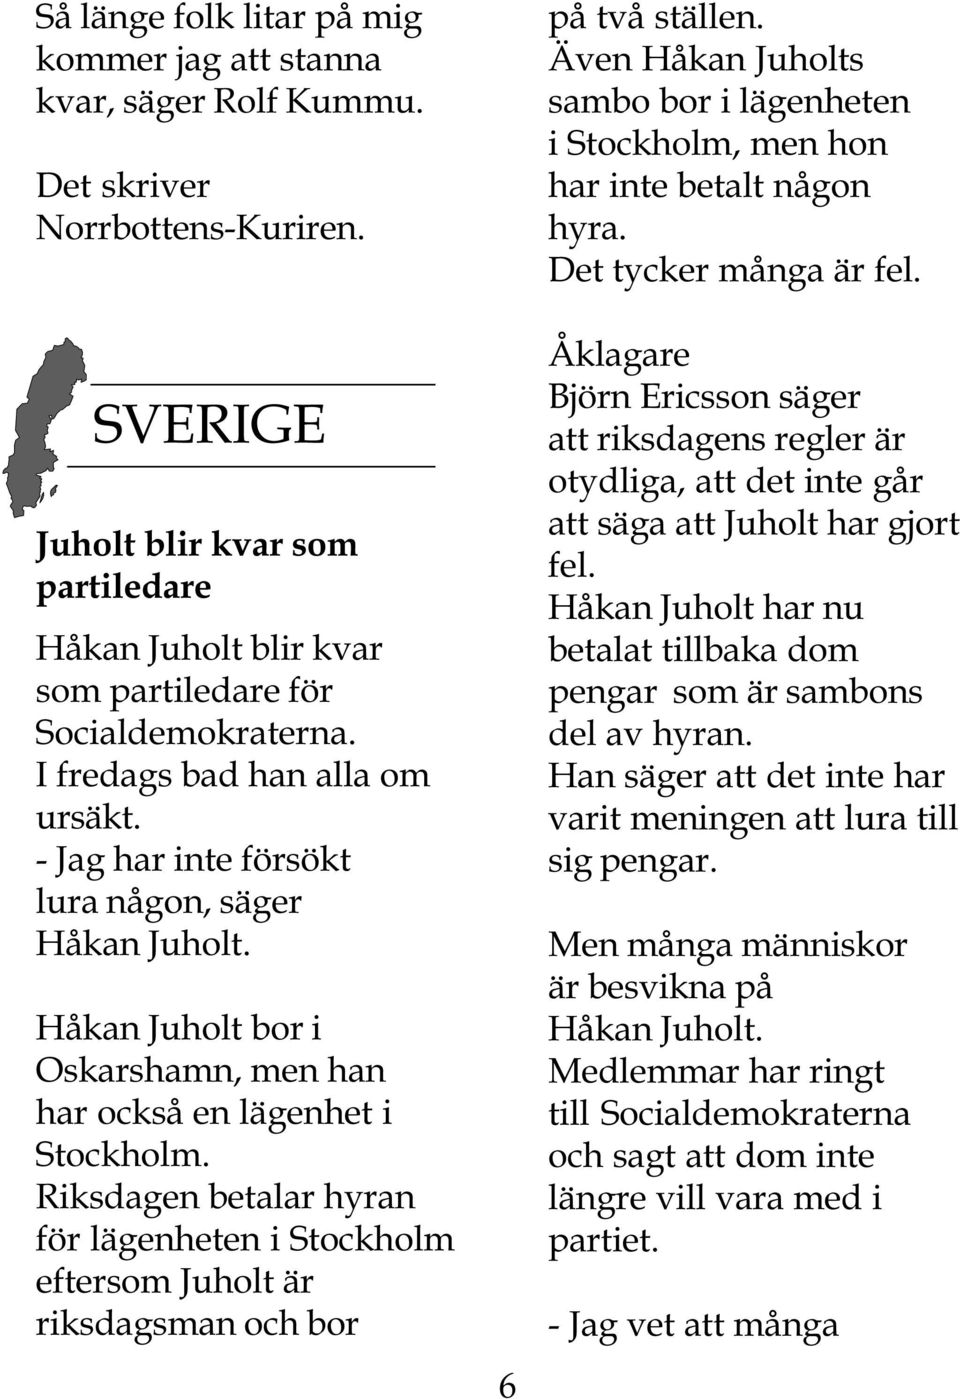 Håkan Juholt bor i Oskarshamn, men han har också en lägenhet i Stockholm. Riksdagen betalar hyran för lägenheten i Stockholm eftersom Juholt är riksdagsman och bor 6 på två ställen.